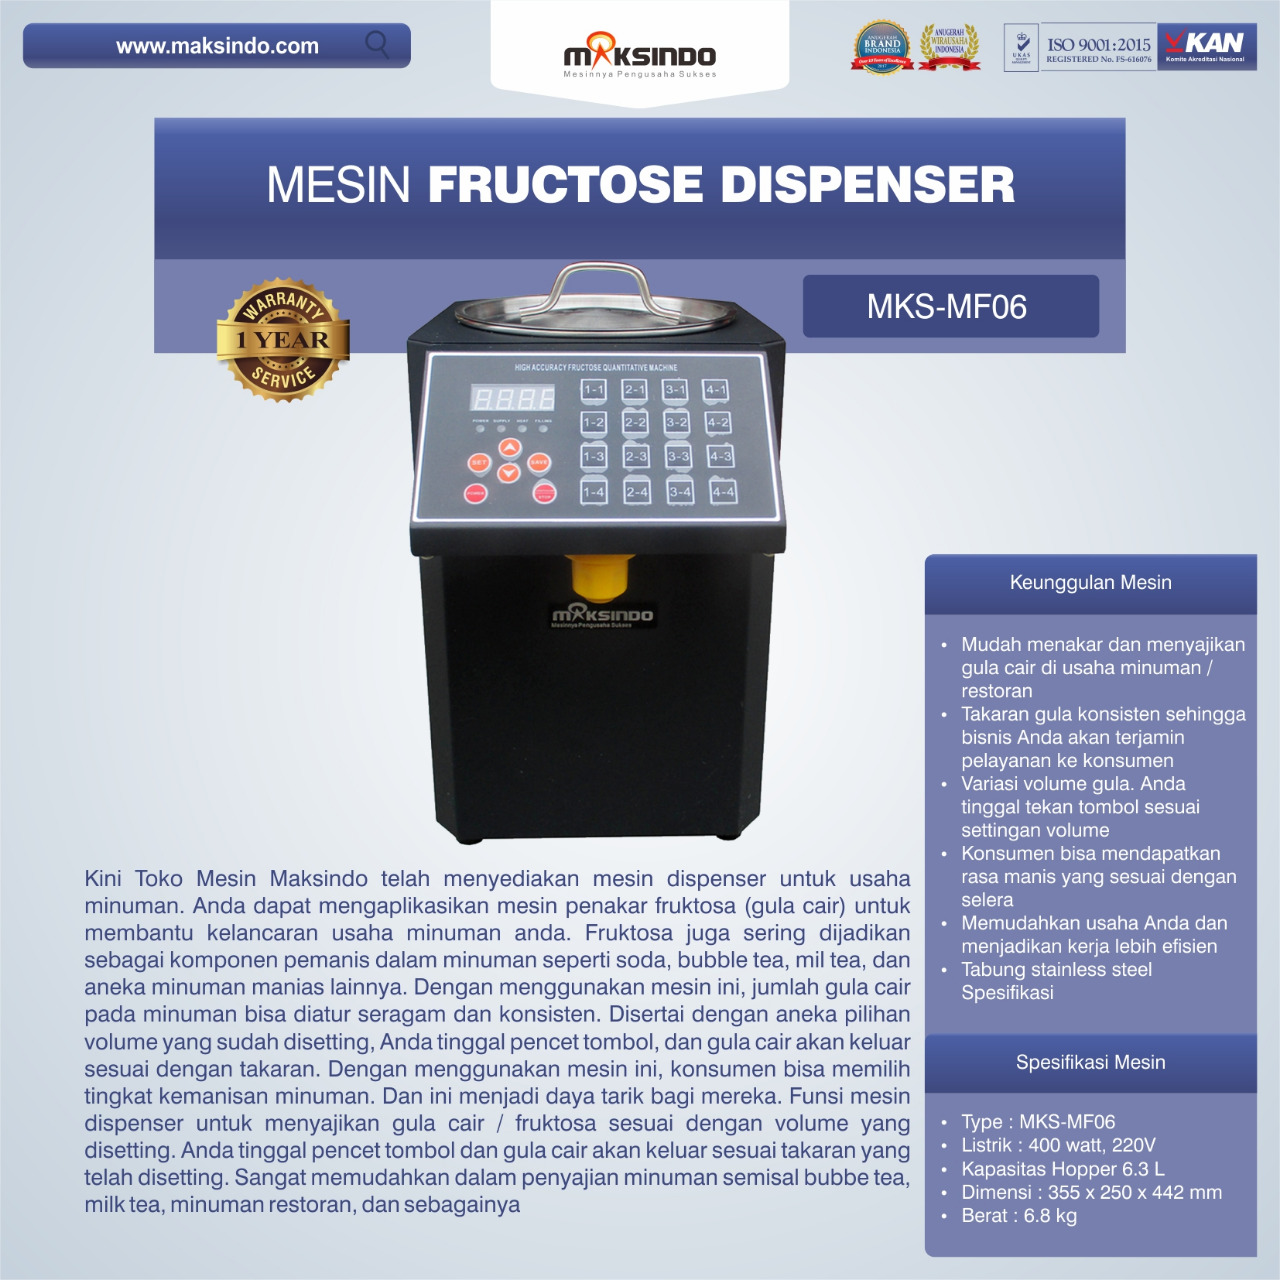 Jual Mesin Fructose Dispenser MKS-MF06 di Tangerang